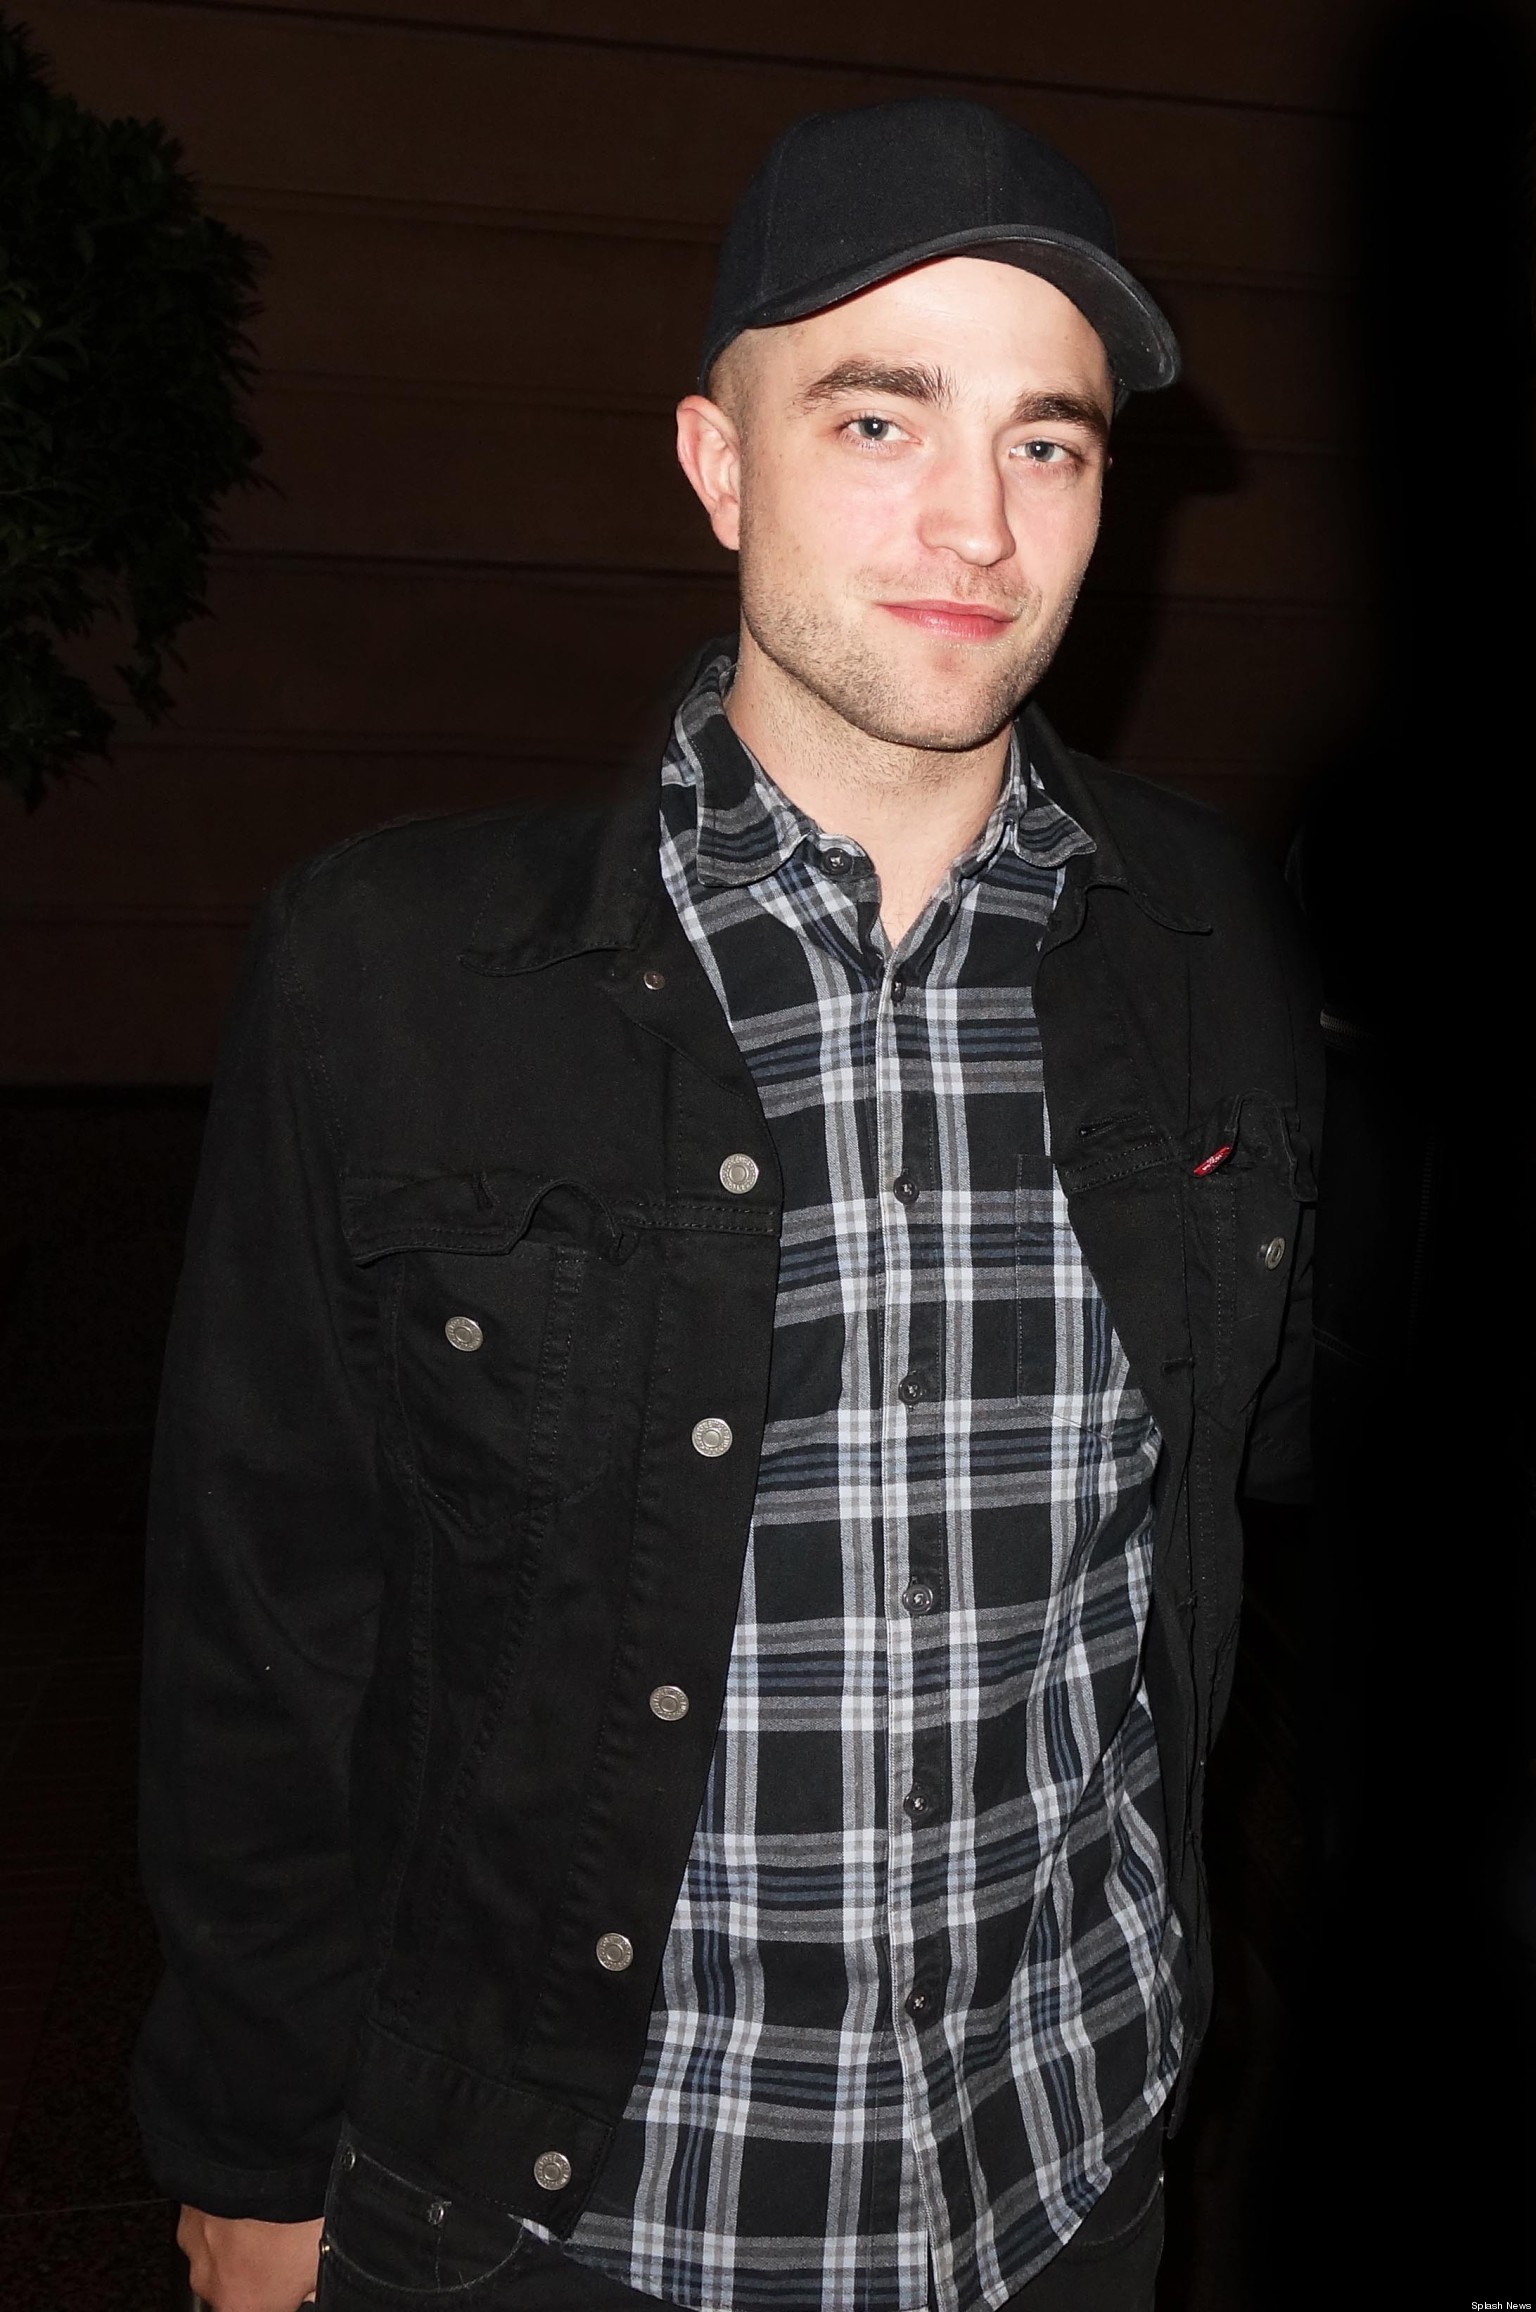 Robert Pattinson Bald: Actor Debuts New Hairdo (PHOTO) | HuffPost